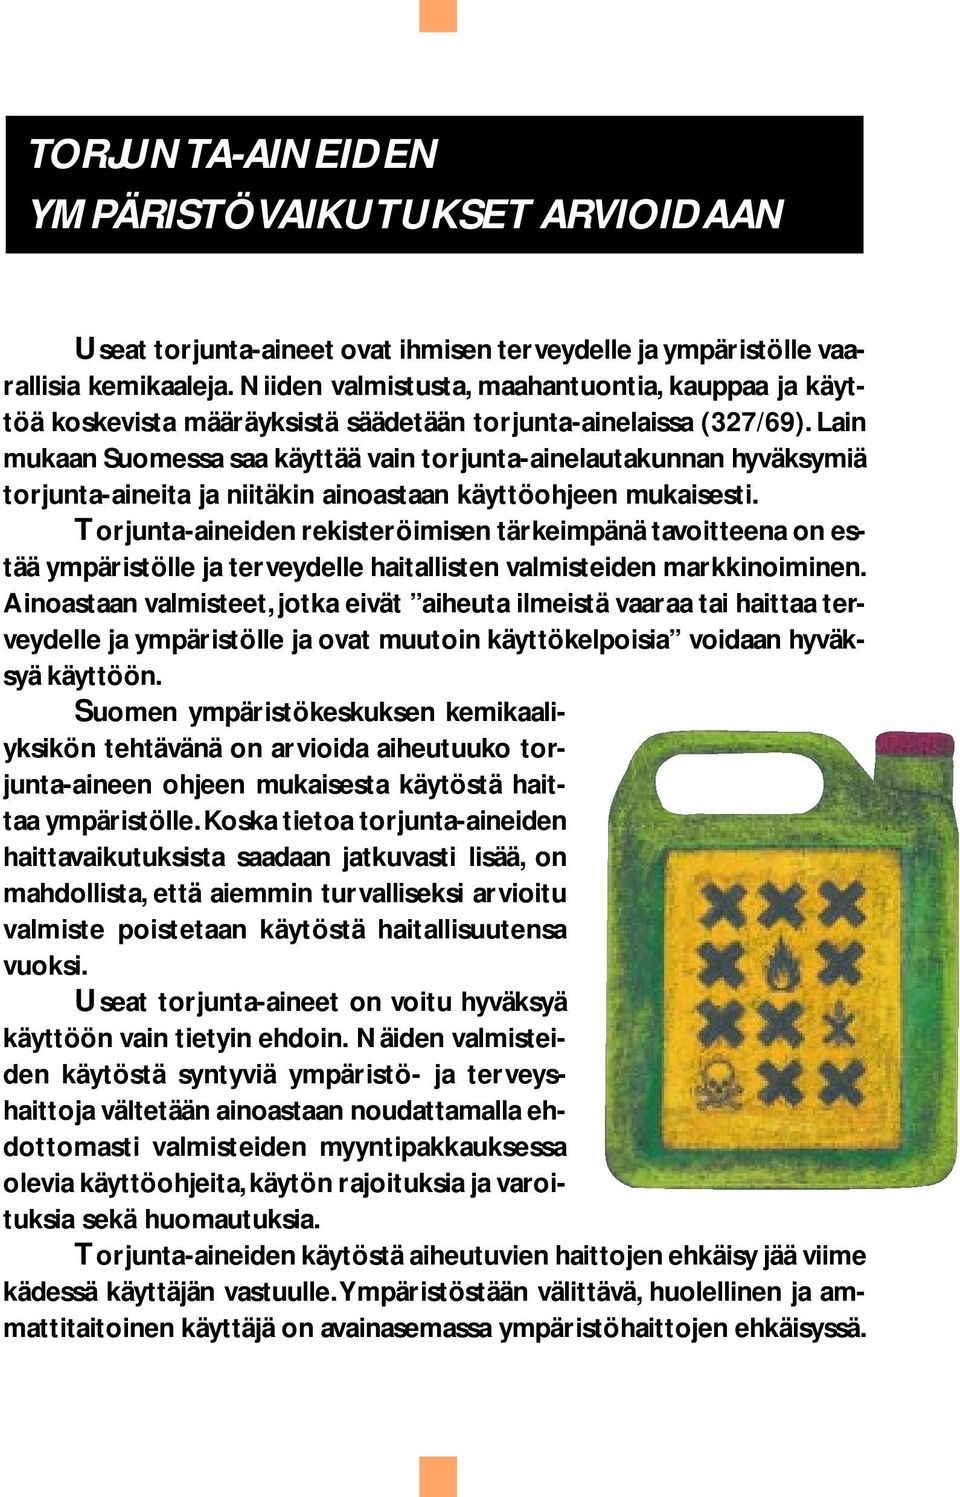 Lain mukaan Suomessa saa käyttää vain torjunta-ainelautakunnan hyväksymiä torjunta-aineita ja niitäkin ainoastaan käyttöohjeen mukaisesti.